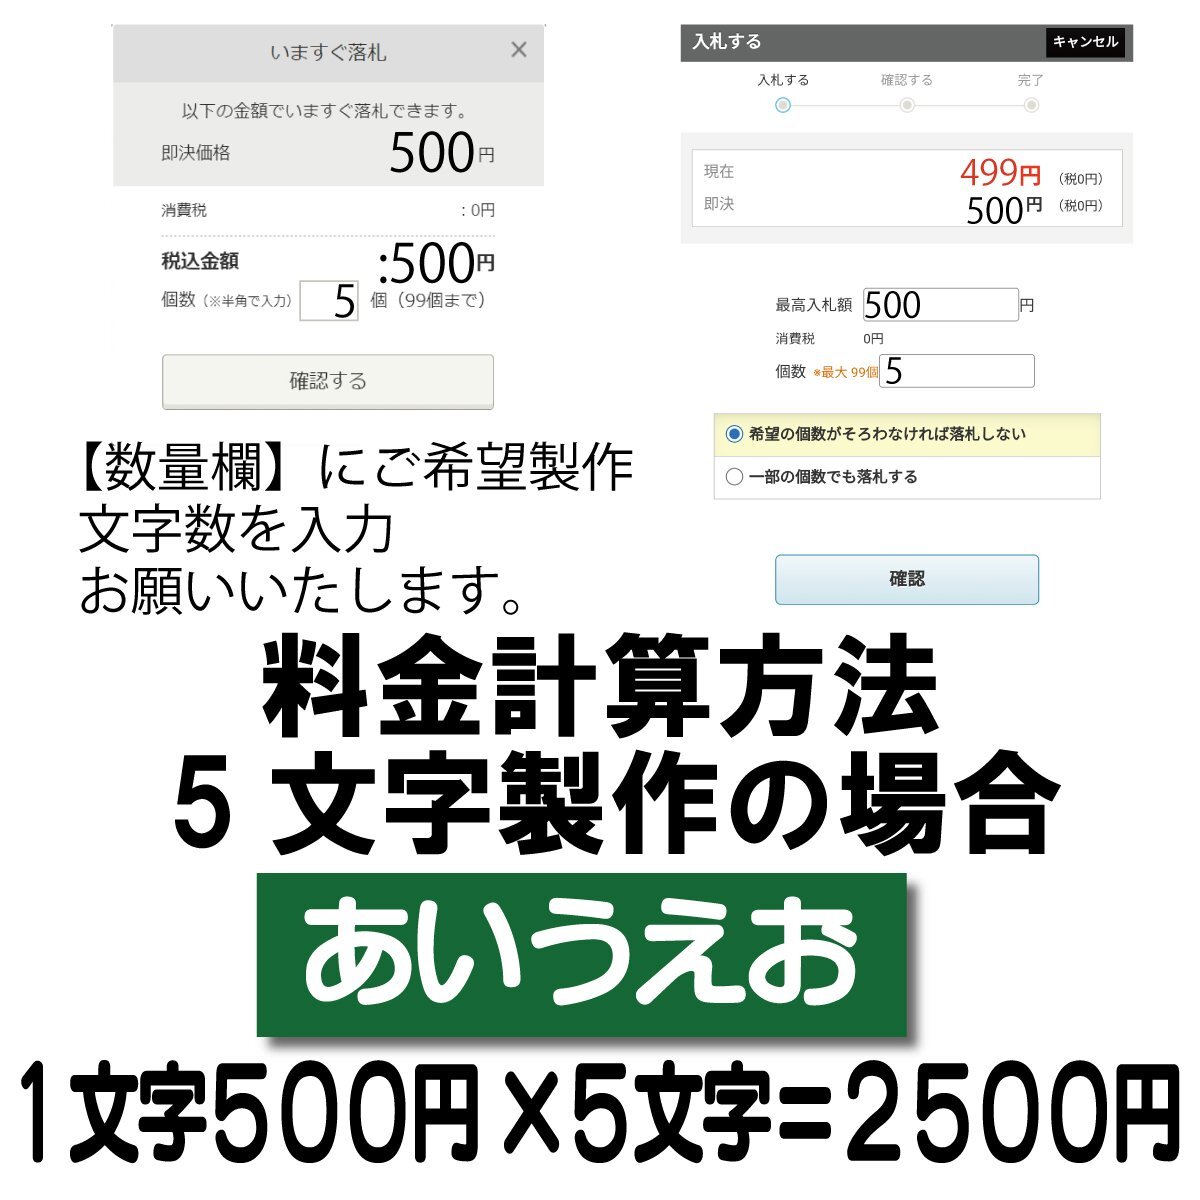 Если количество символов составляет 5 символов, это будет 2500 иен.